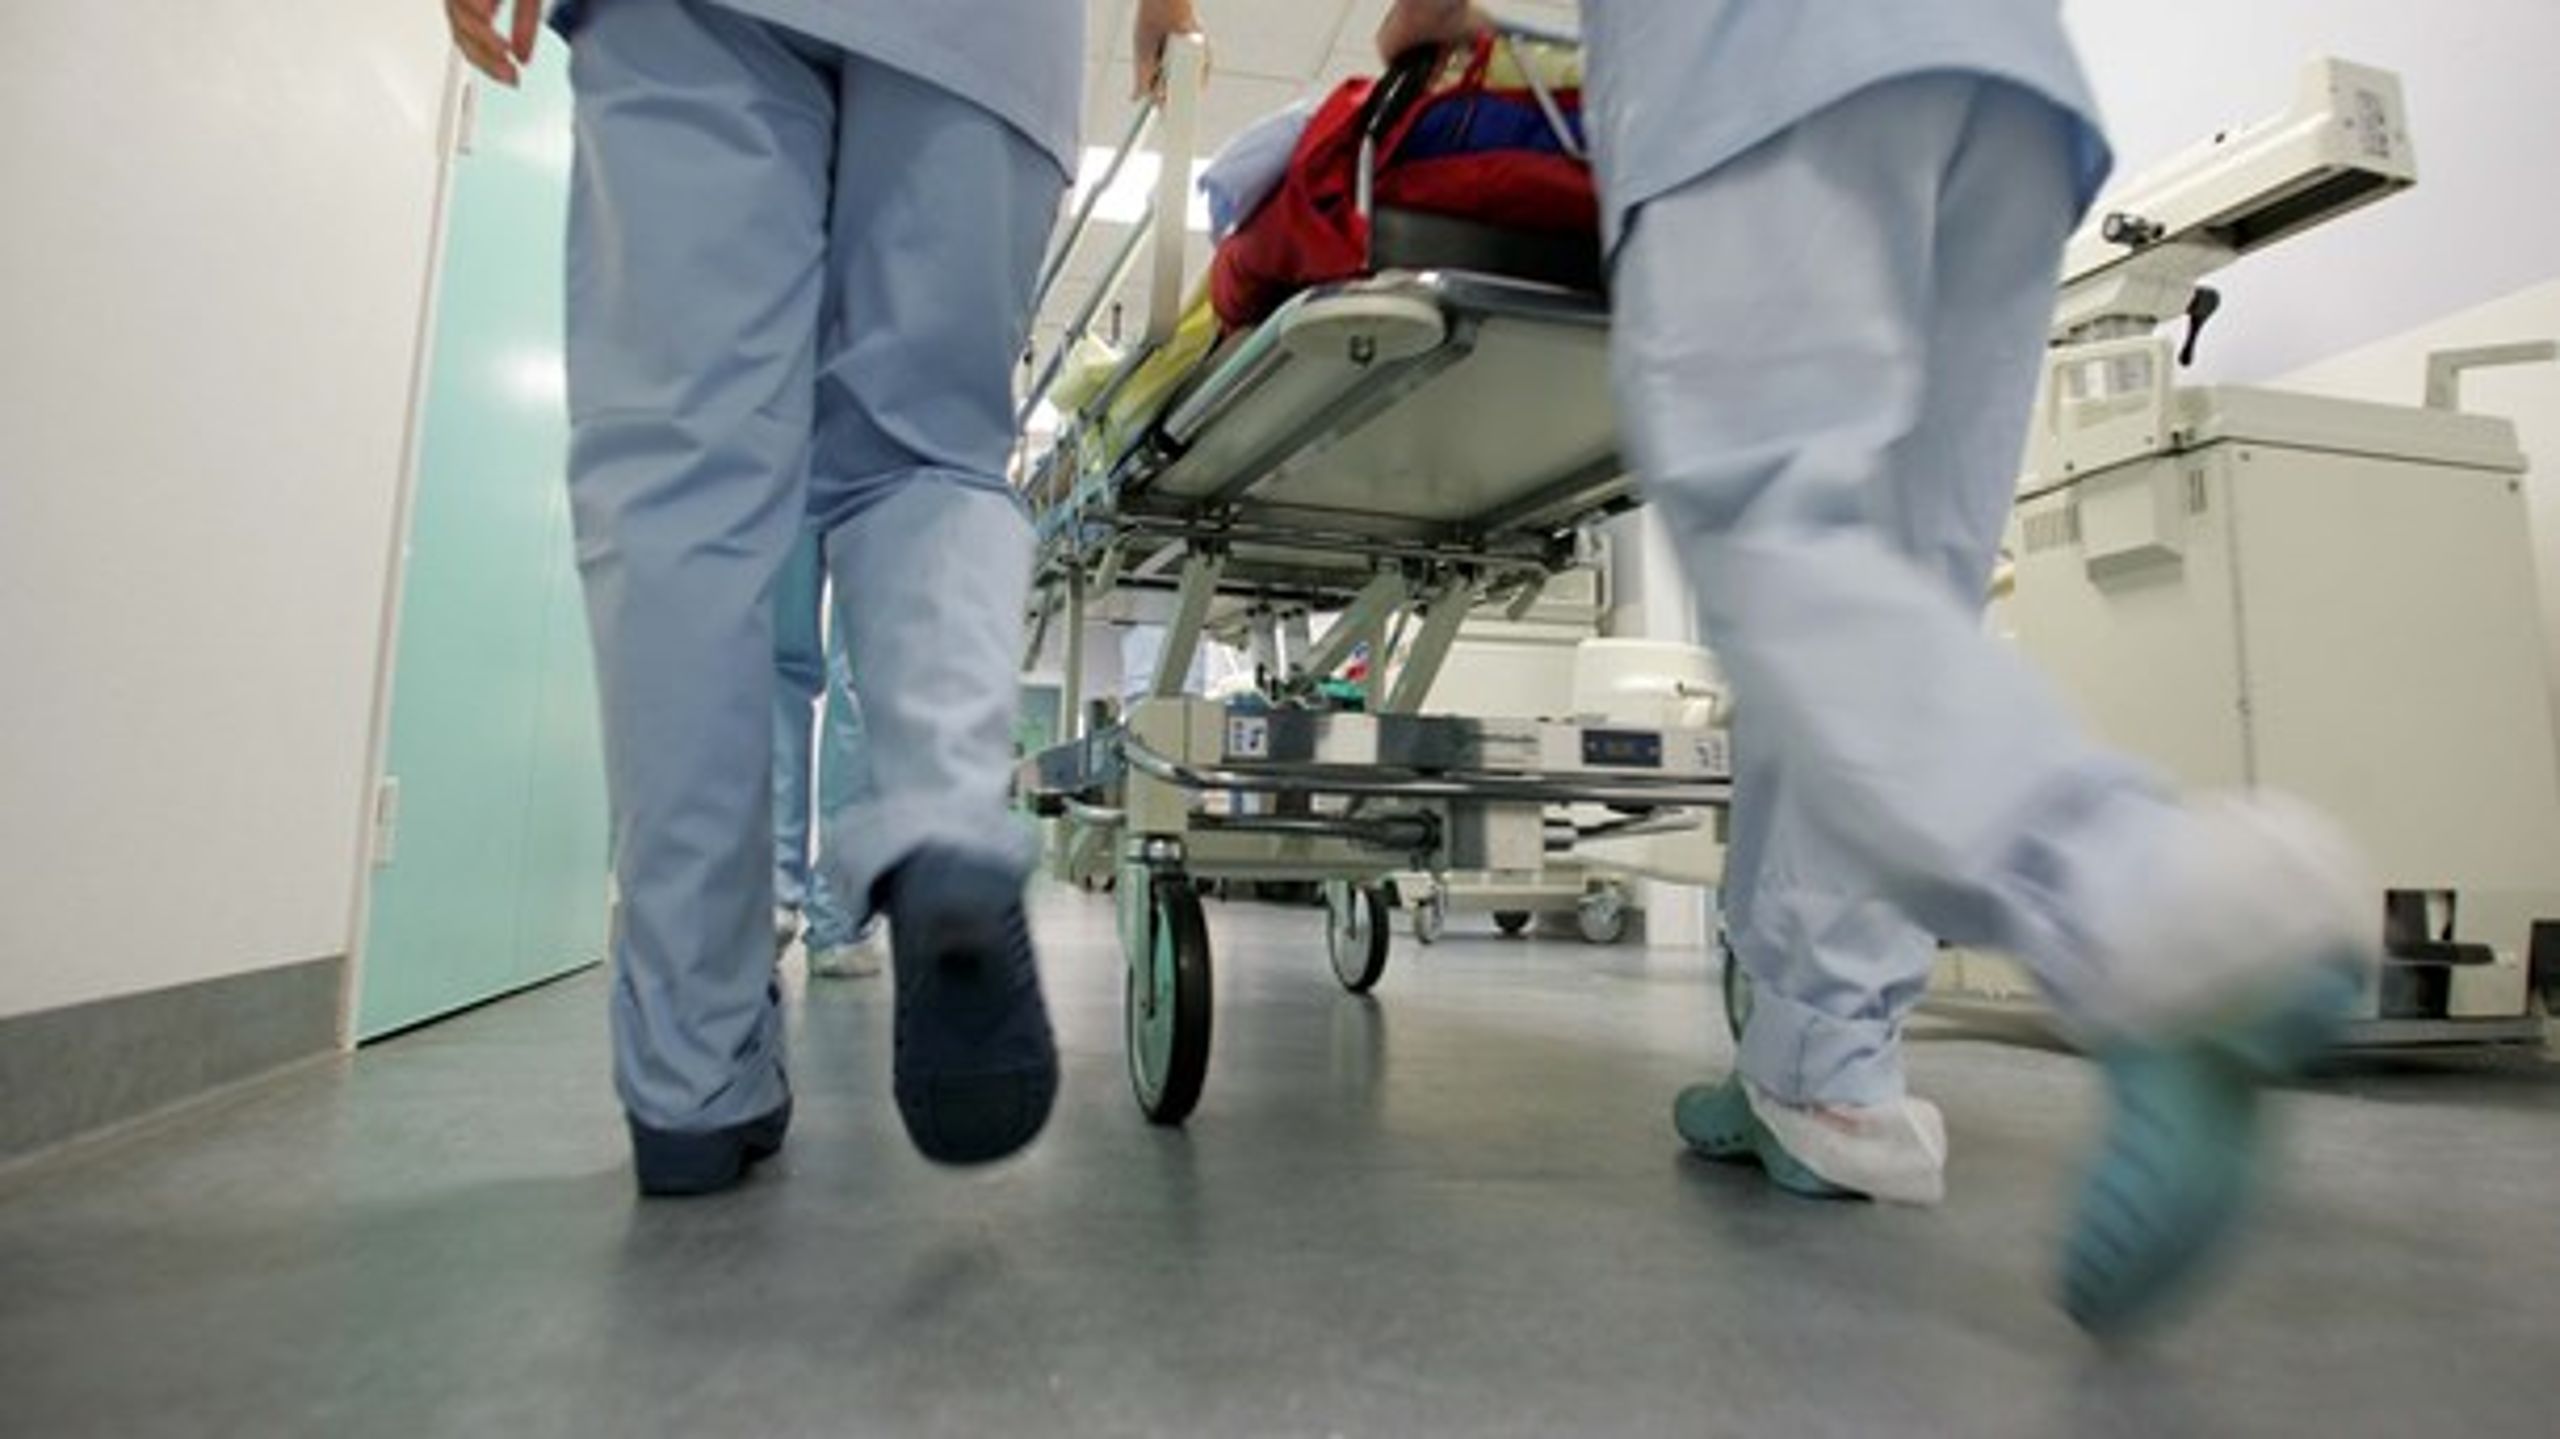 Socialdemokratiet foreslår i deres sundhedsudspil at ansætte 1.000 nye sygeplejersker.